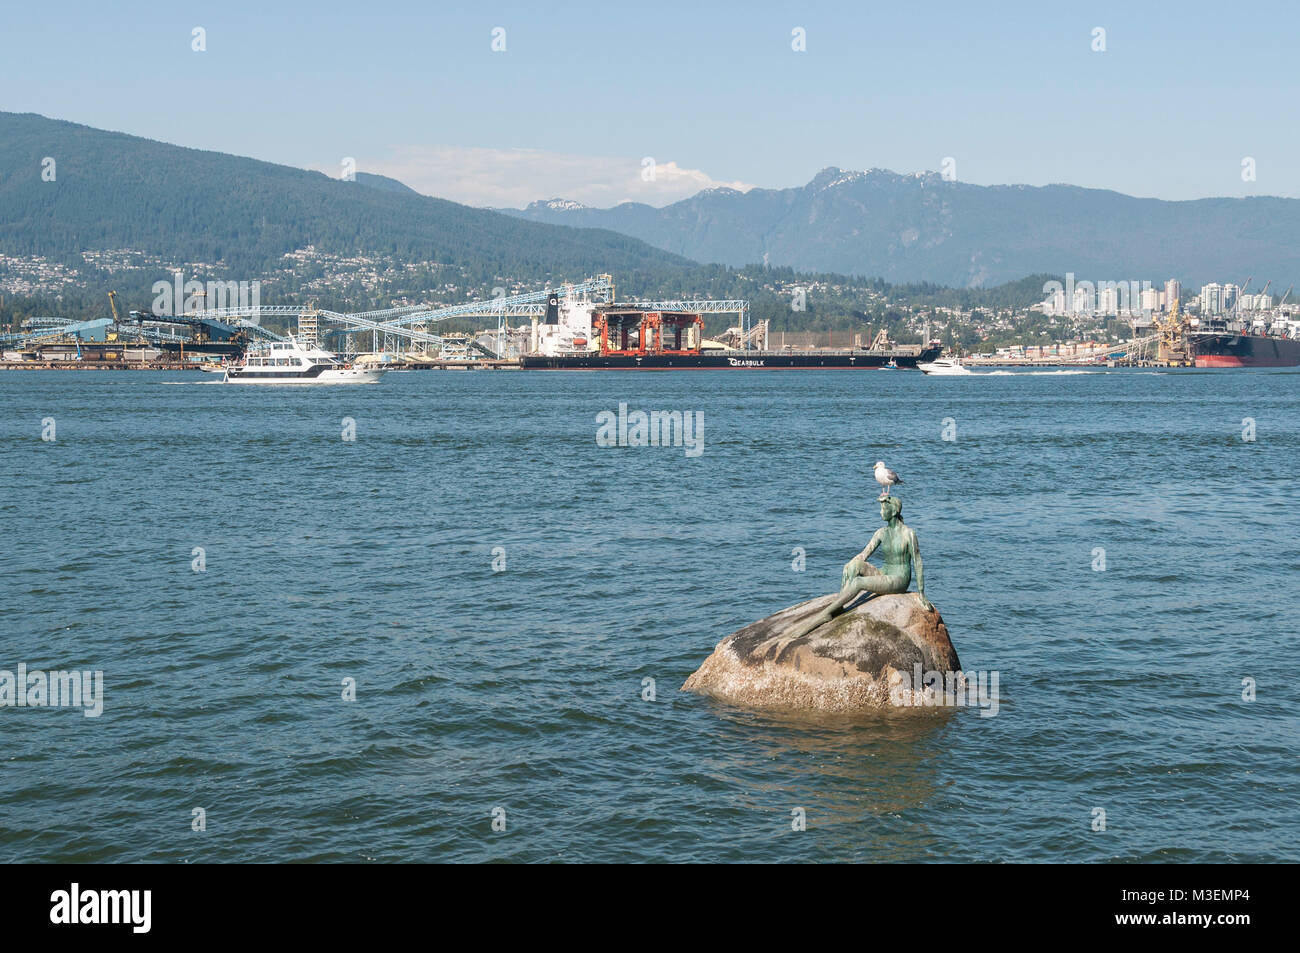 Vancouver, British Columbia/Kanada - 20. Juli 2010: Mädchen in der Neoprenanzug ist eine lebensgroße Bronze Skulptur von Elek Imredy im Wasser auf der Nordseite von Stockfoto